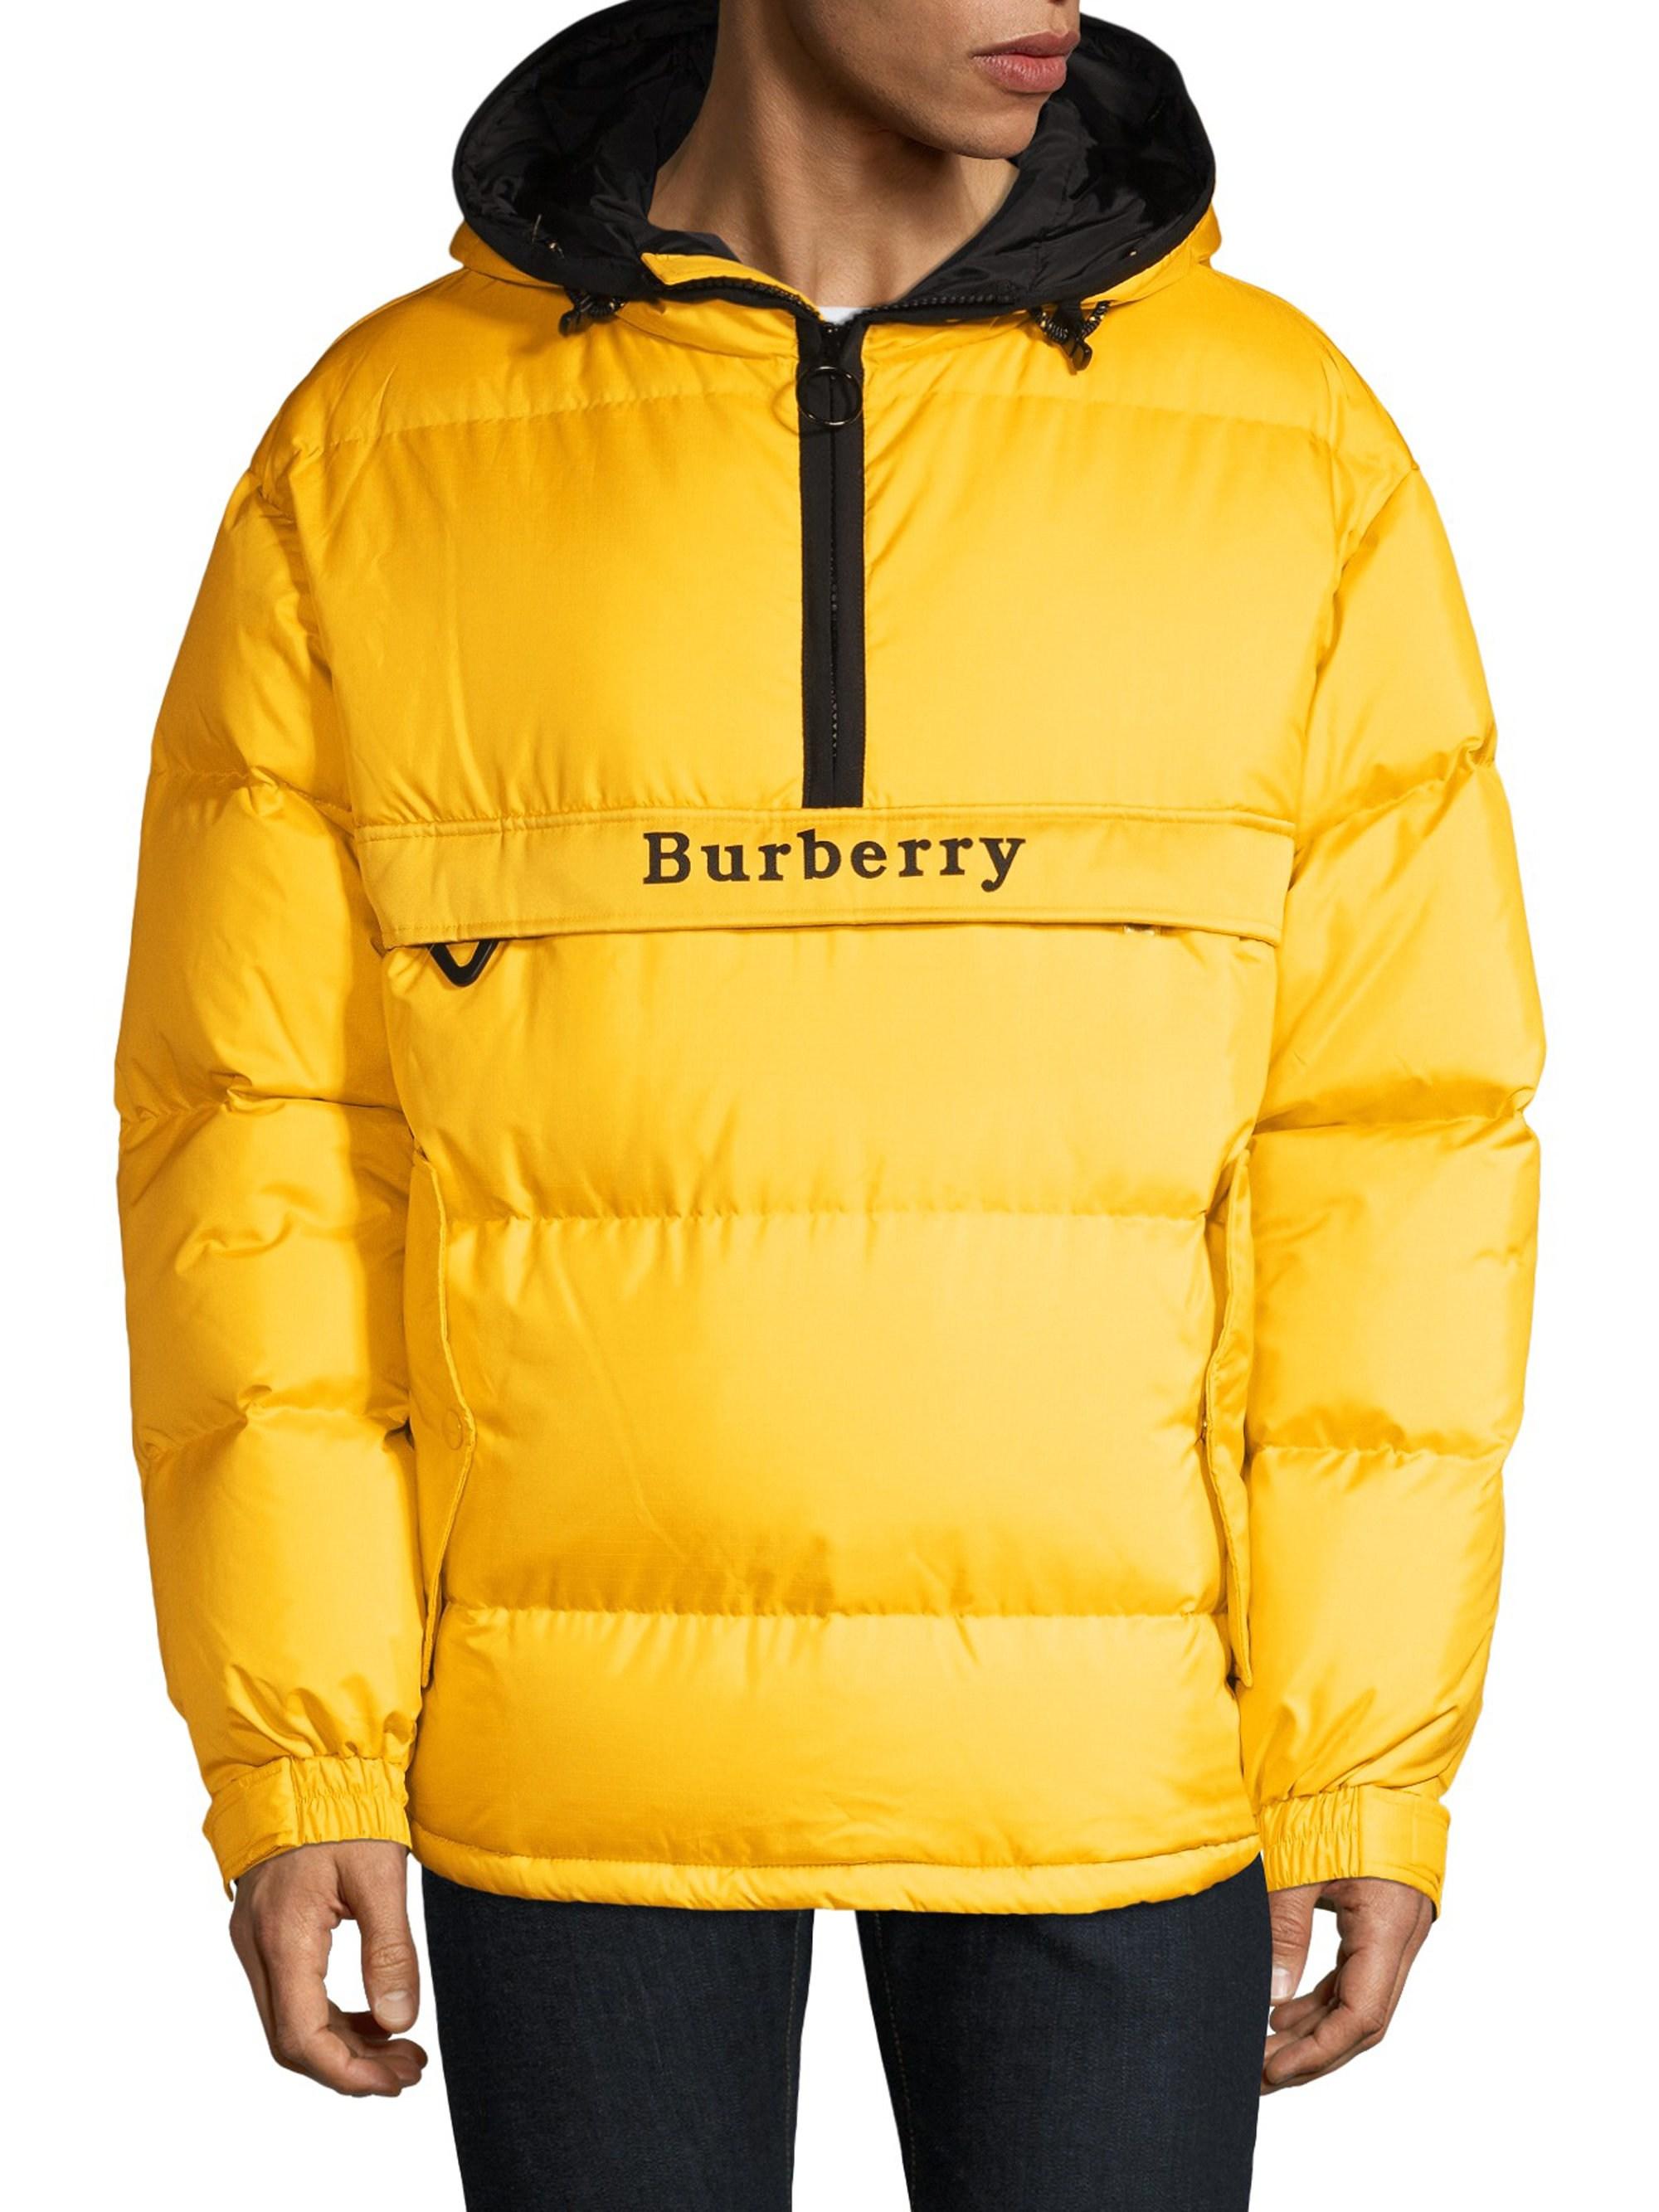 burberry jacket yellow